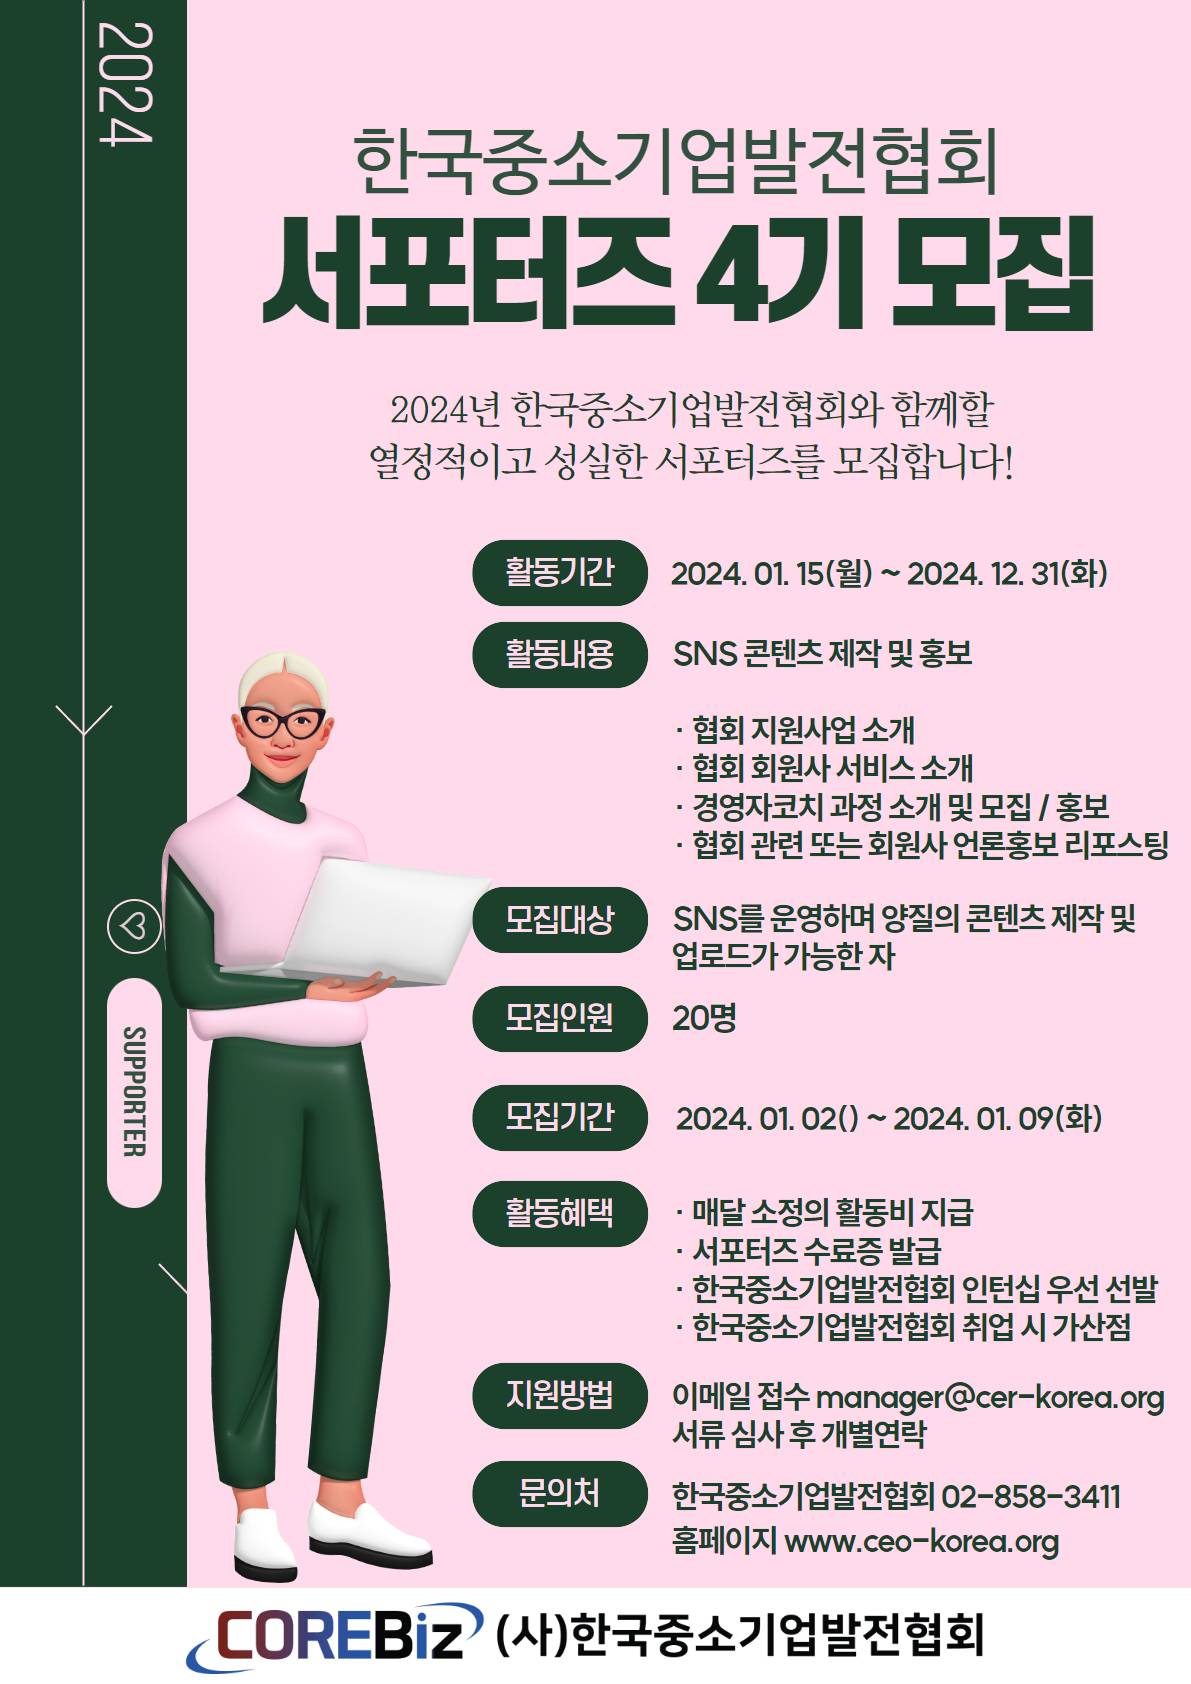 한국중소기업발전협회 4기 서포터즈 모집 공고